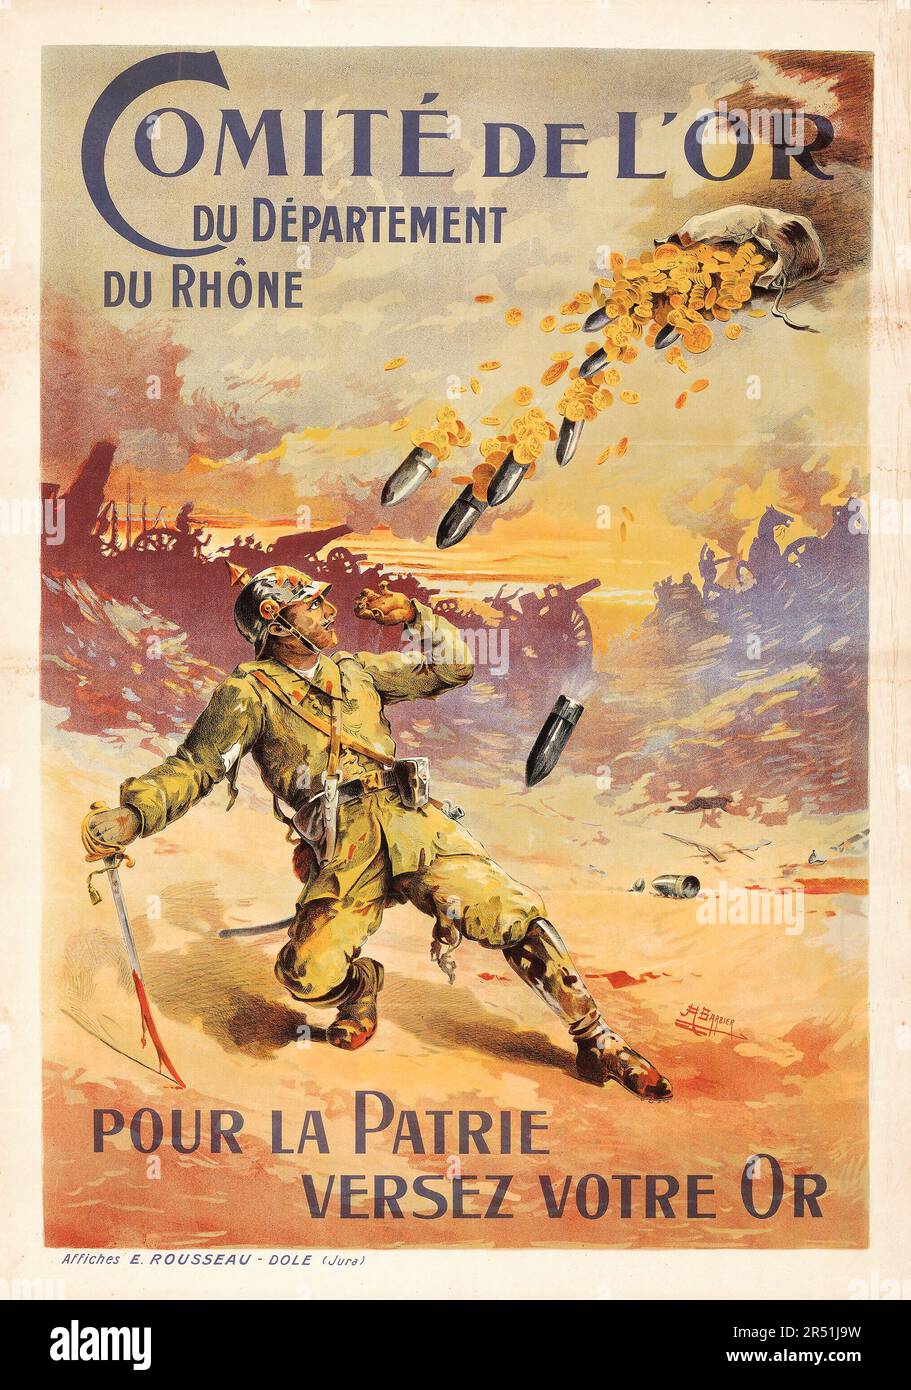 French World War I Propaganda (Comité de l'Or du Département du Rhône, 1910s) 'Pour la patri versez votre or,' Antoine Barbier Artwork Stock Photo